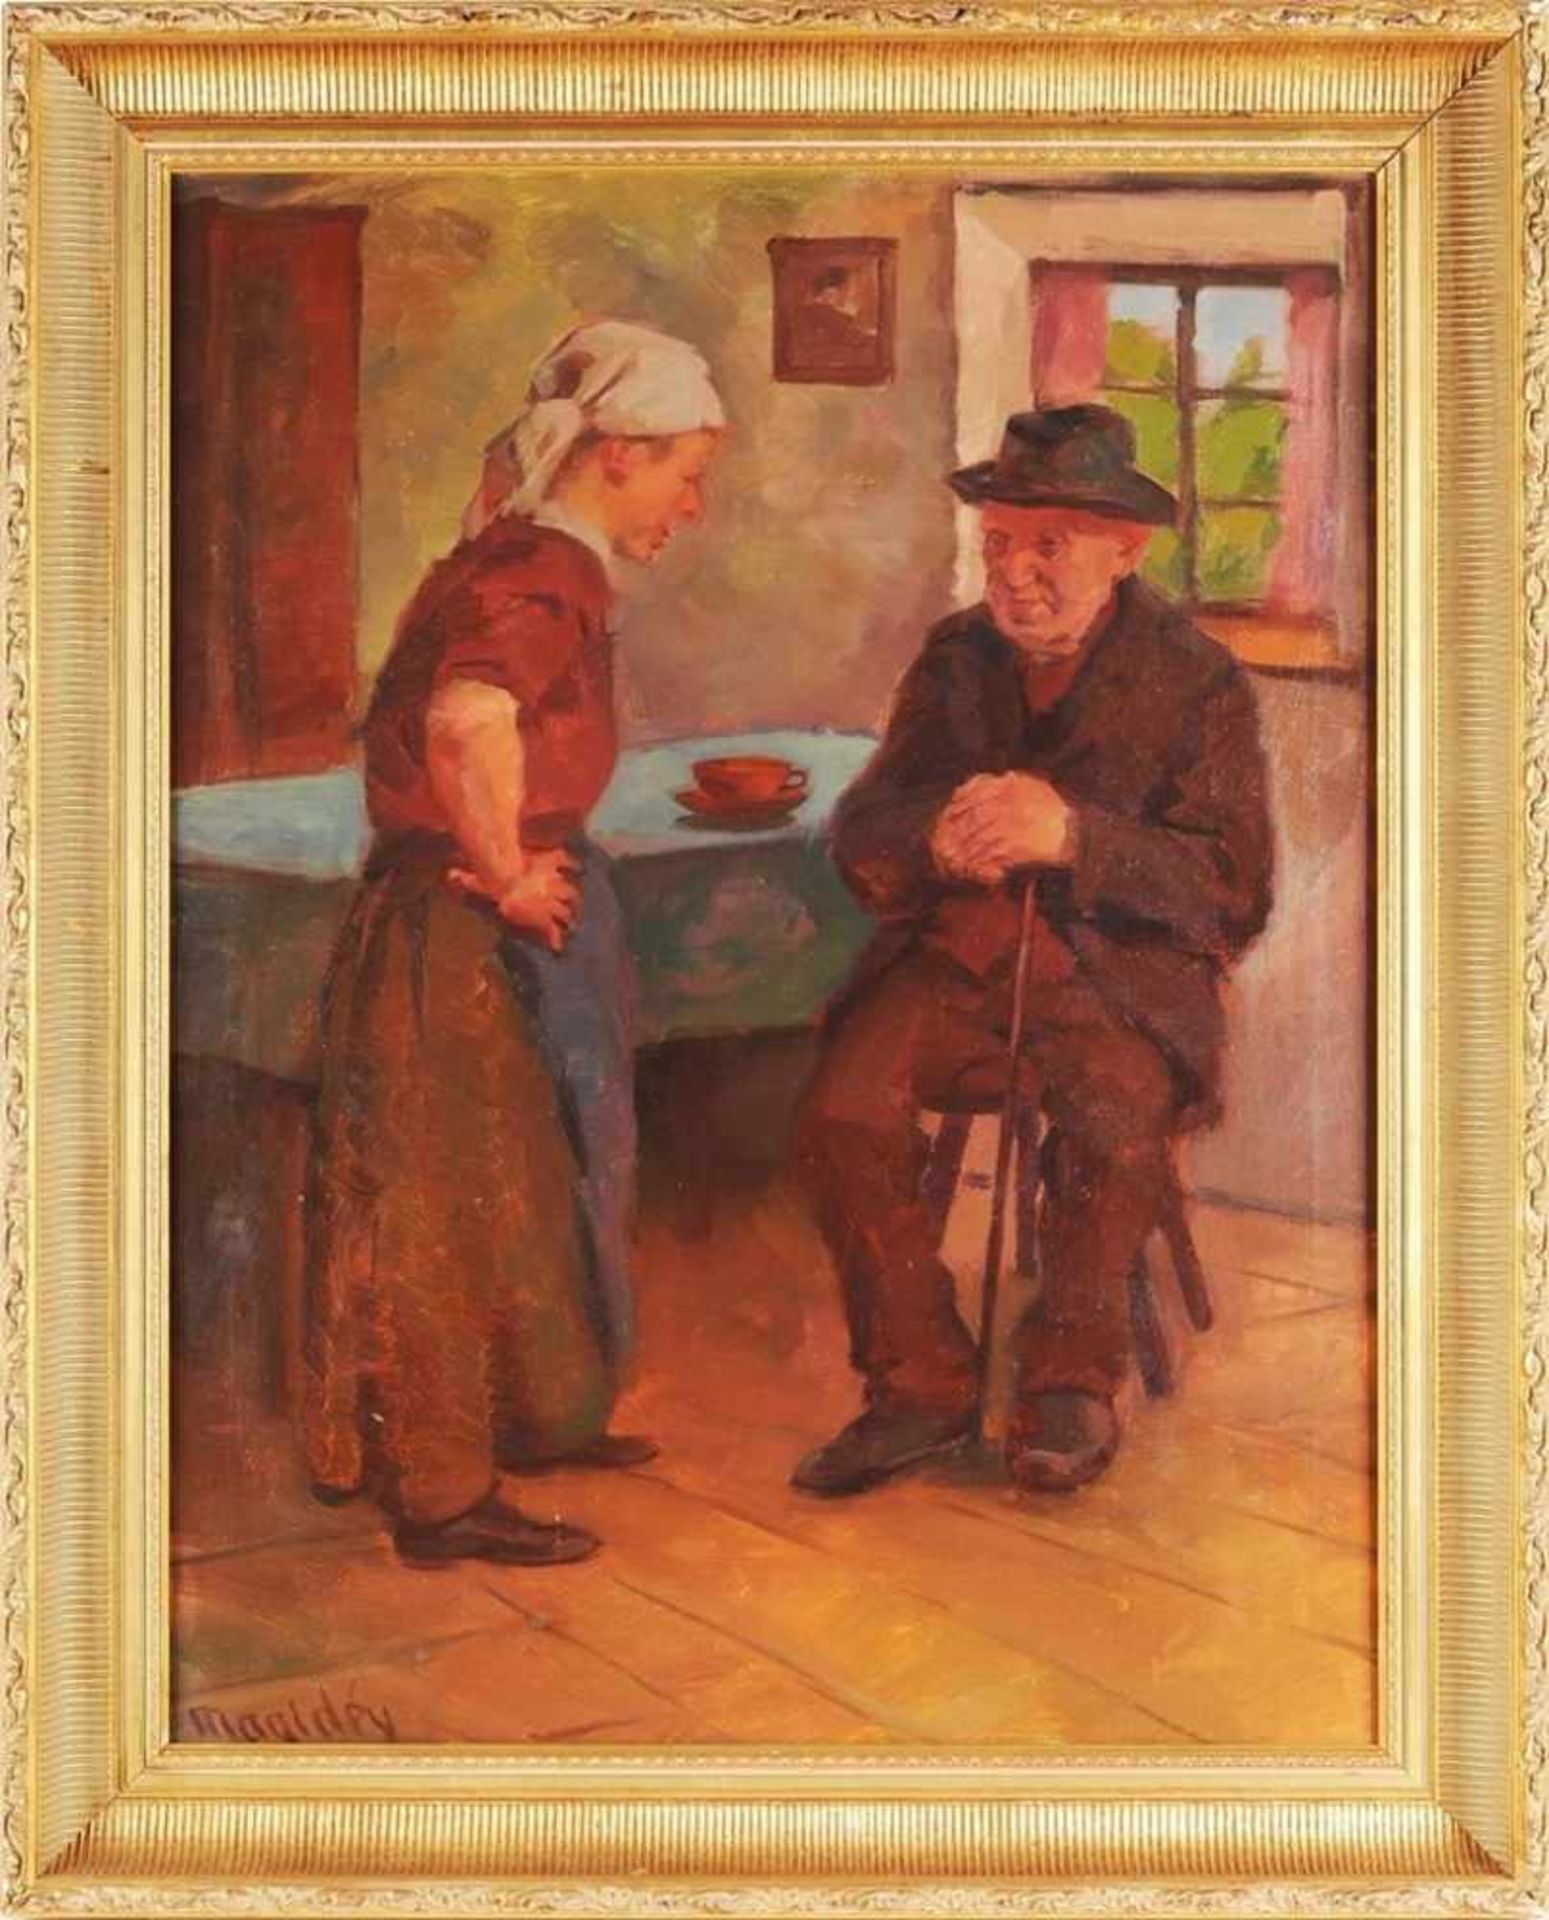 Magidey, Wladimir (geb. 1881 in Wilna, war in München tätig) Öl/Lwd. Bauernstube mit älterem Paar am